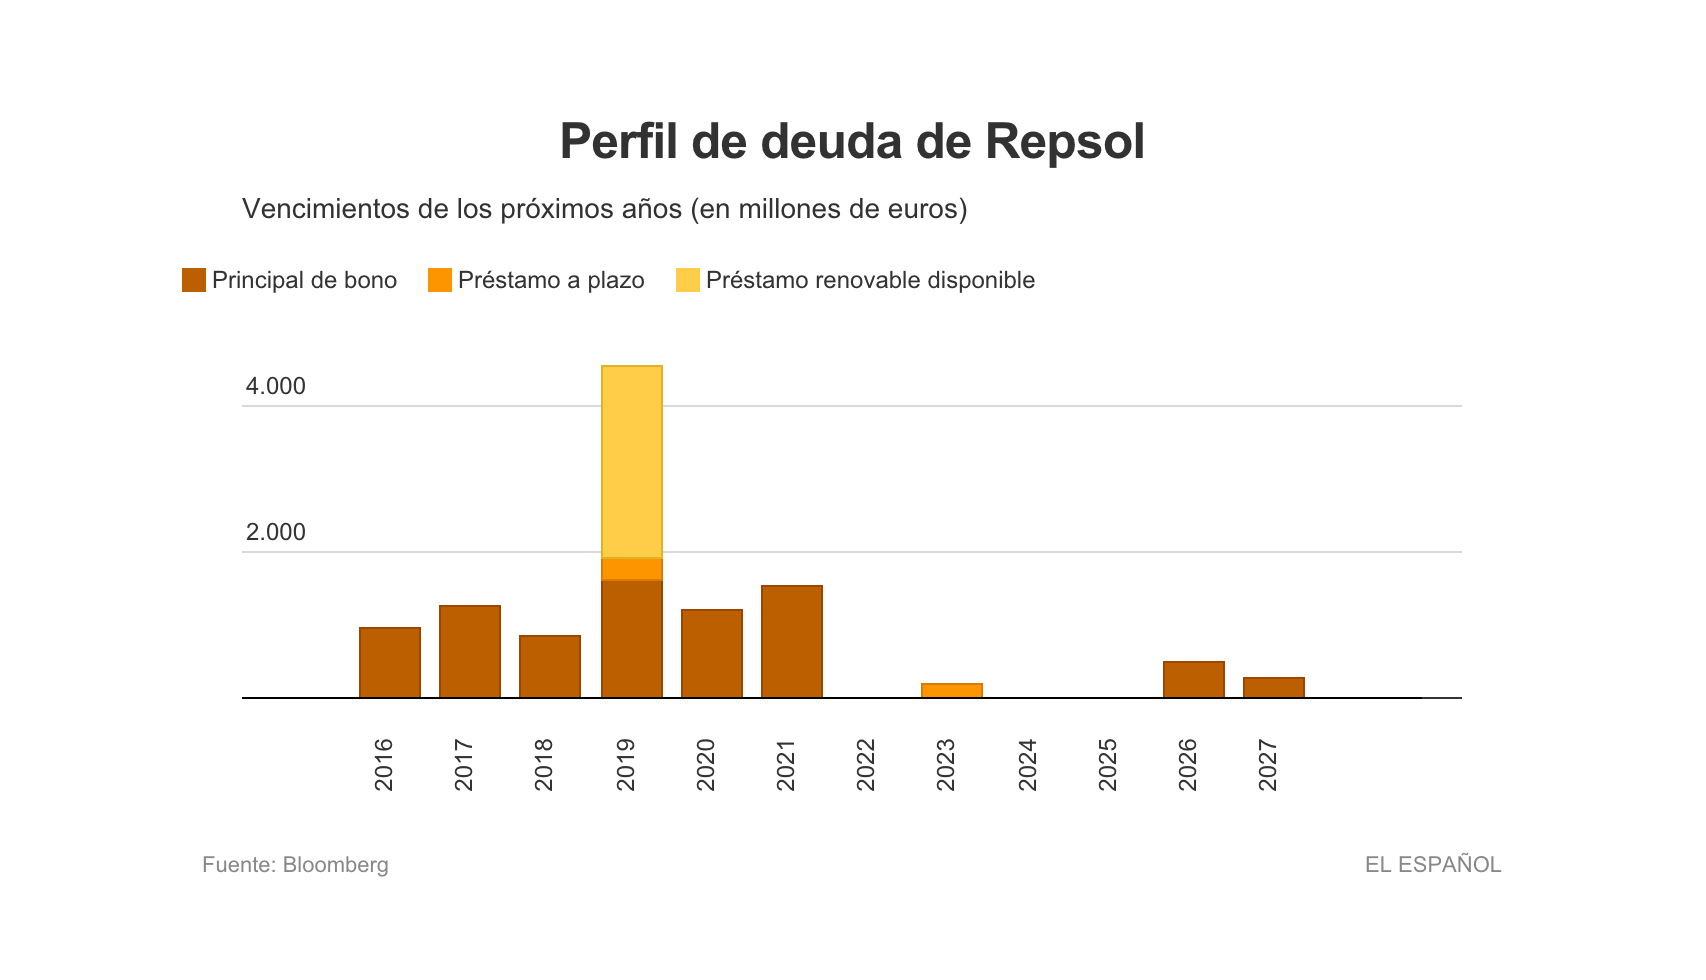 Perfil de deuda de Repsol